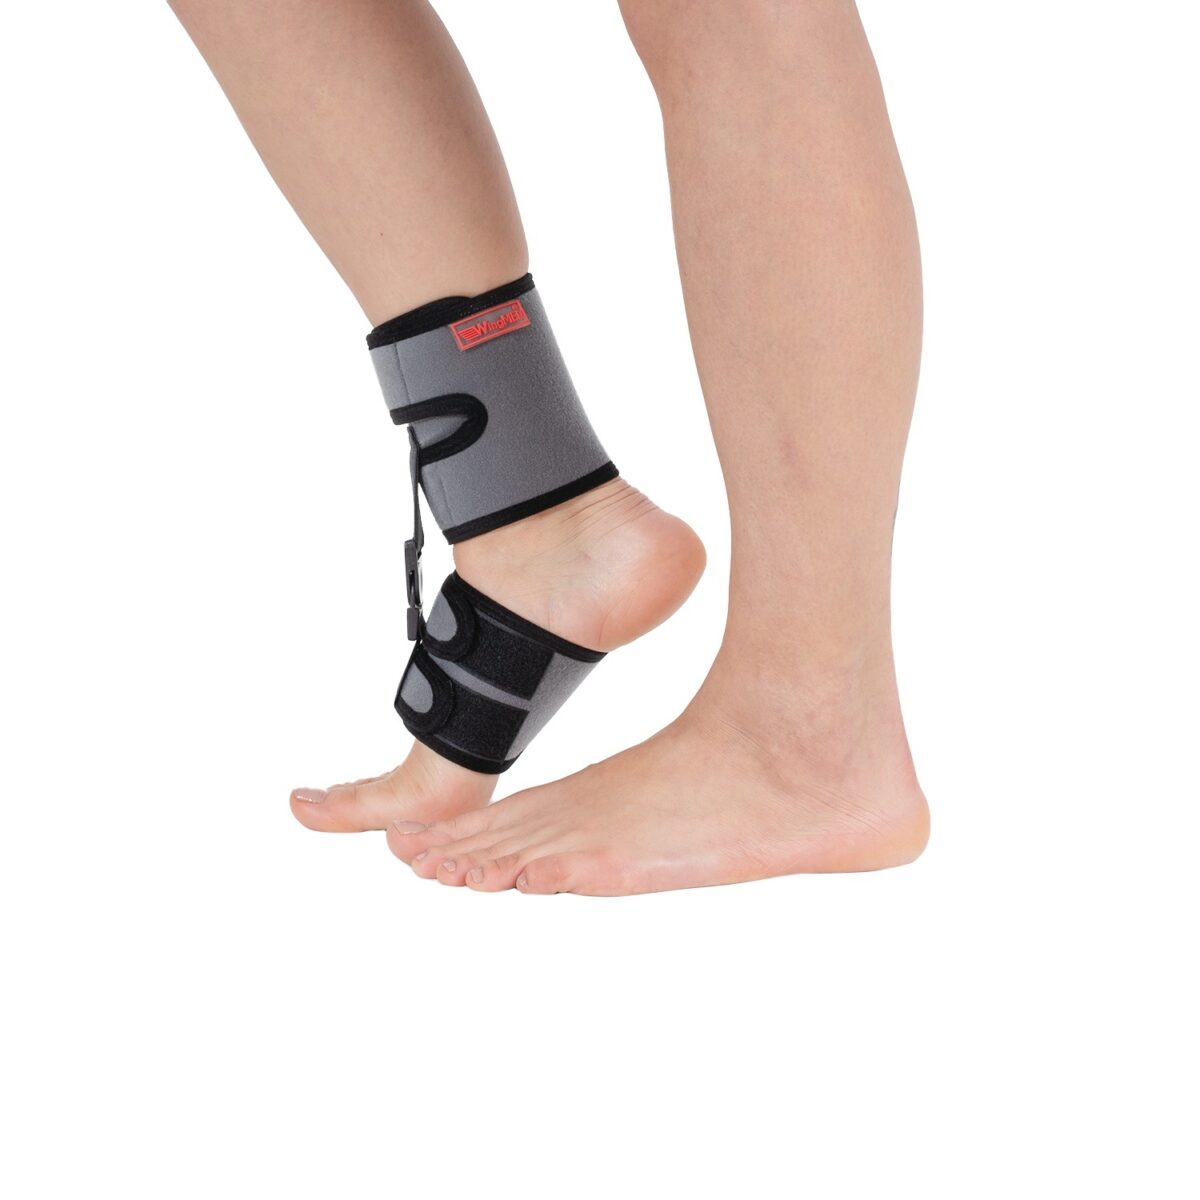 wingmed orthopedic equipments W623 dorsi flexion bandage low foot 37